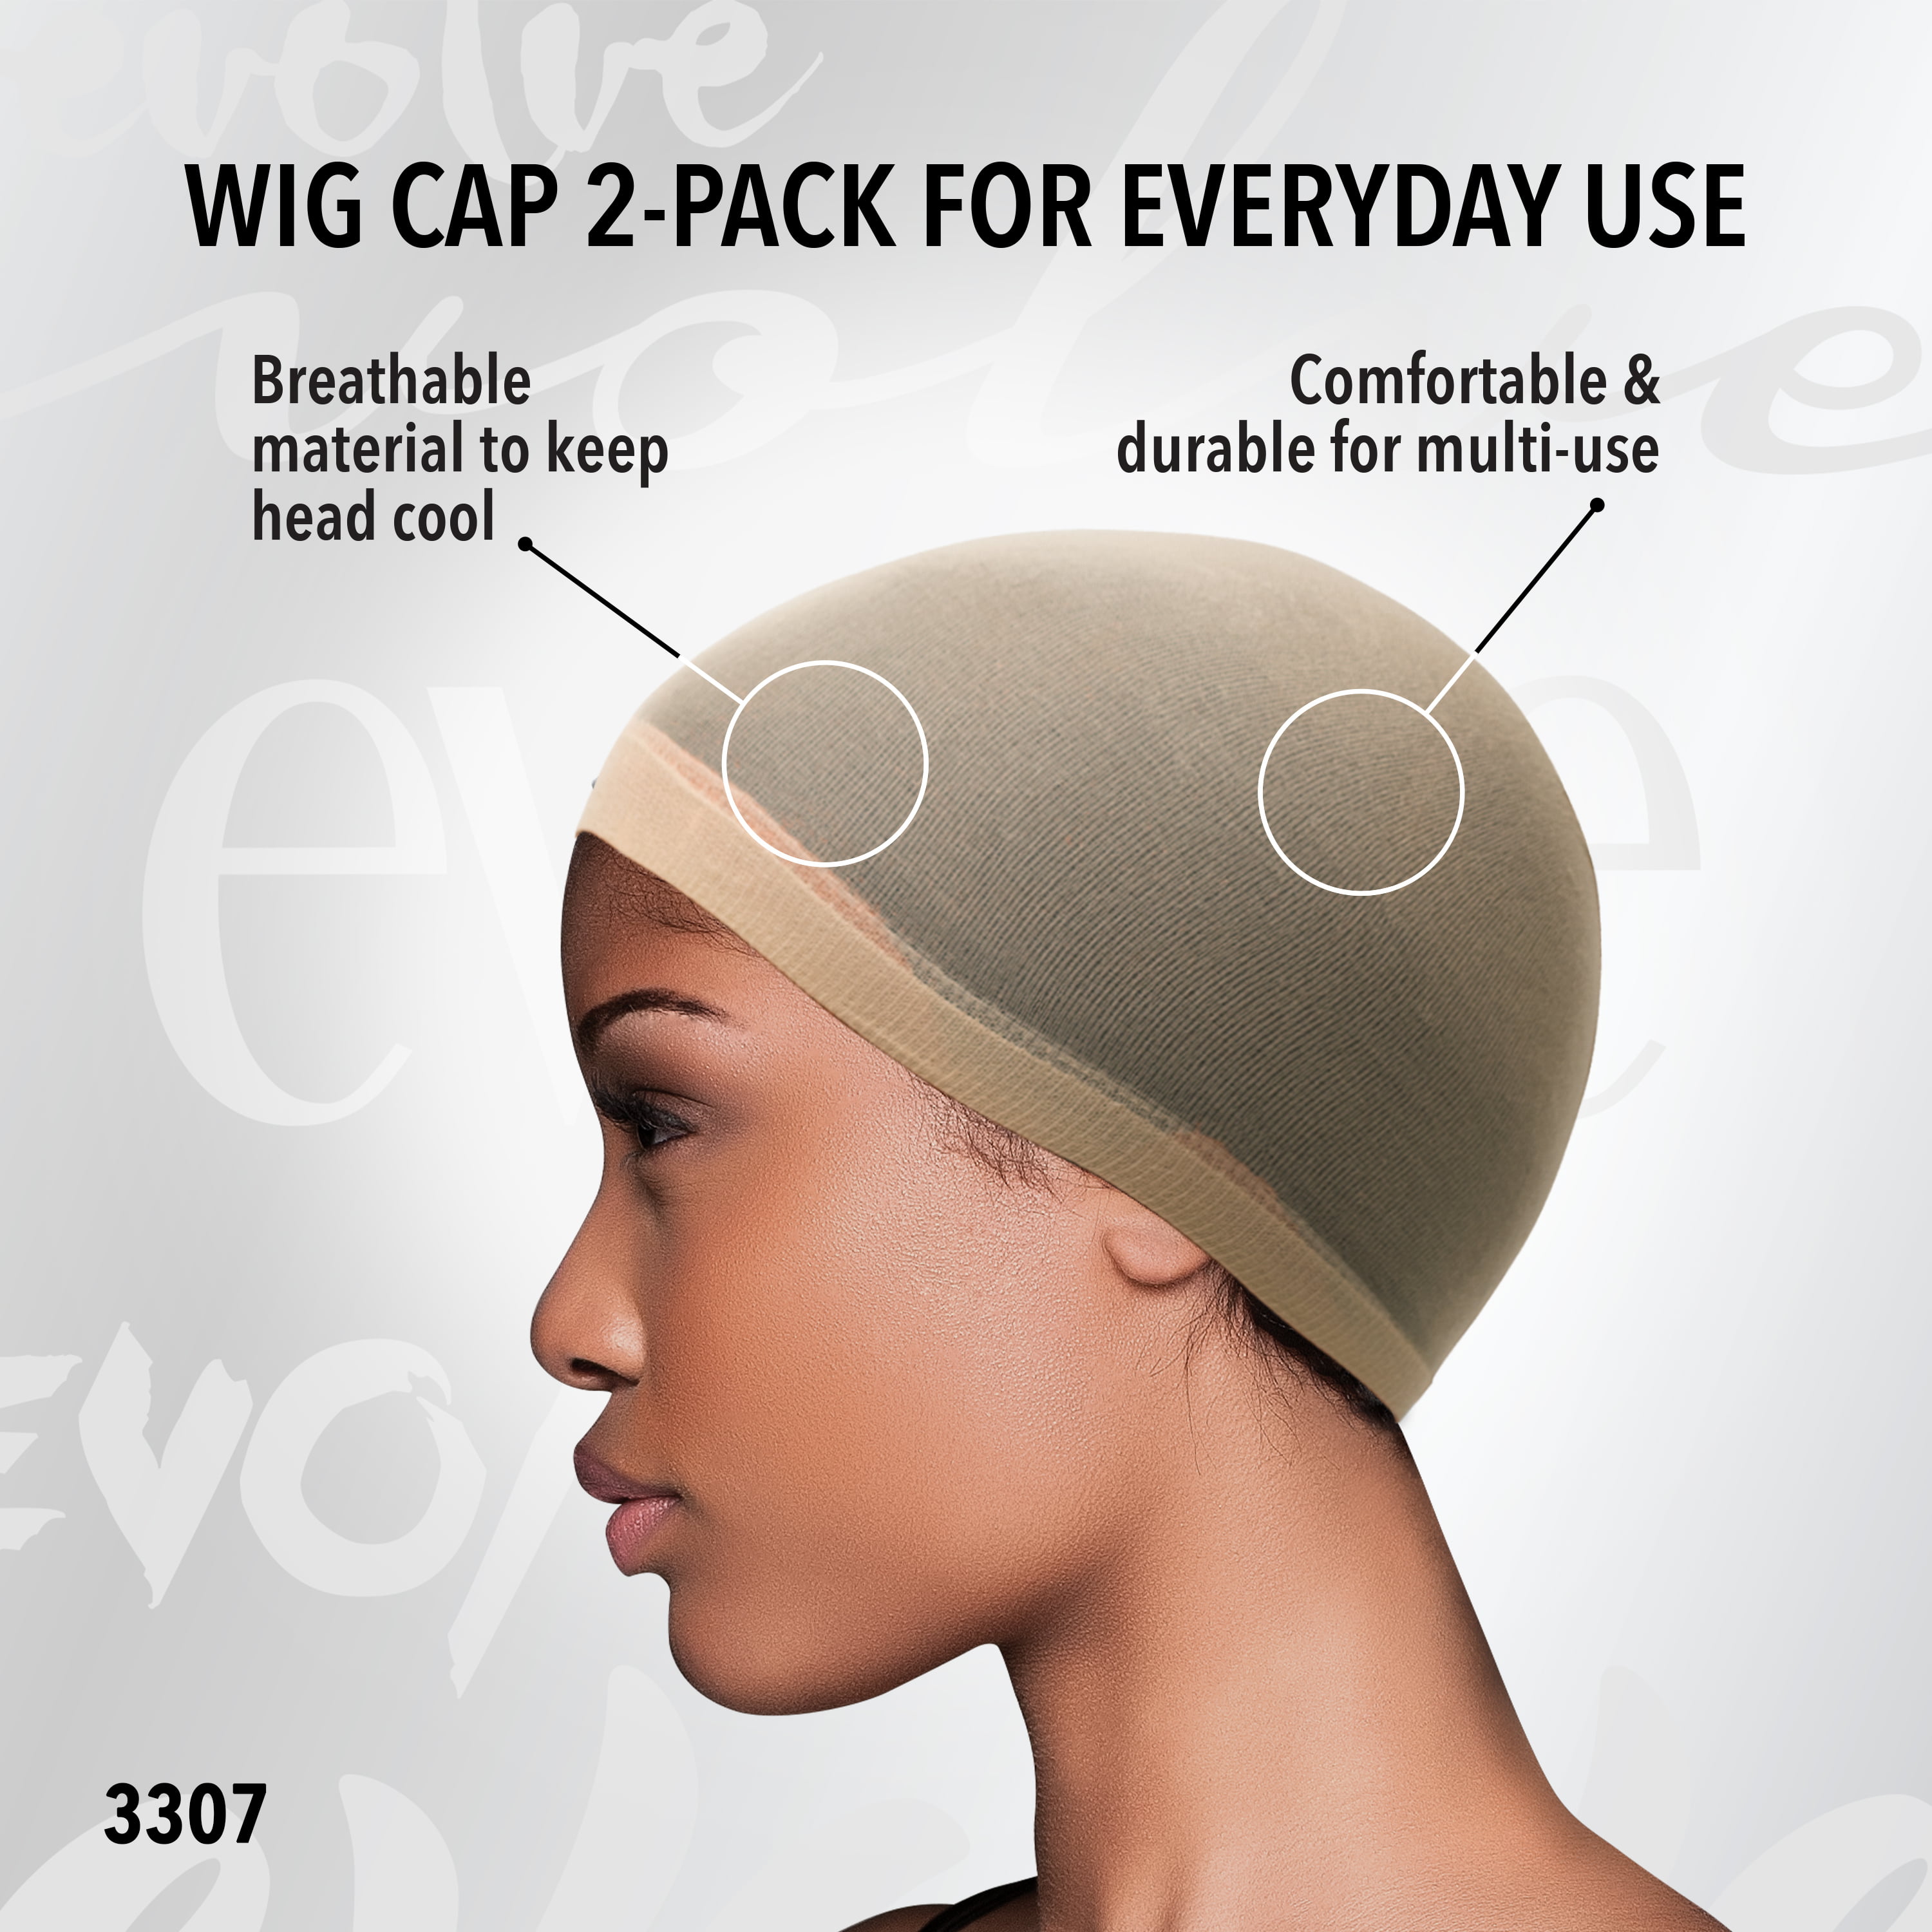 Evolve Black Wig Cap - Shop Hair Accessories at H-E-B